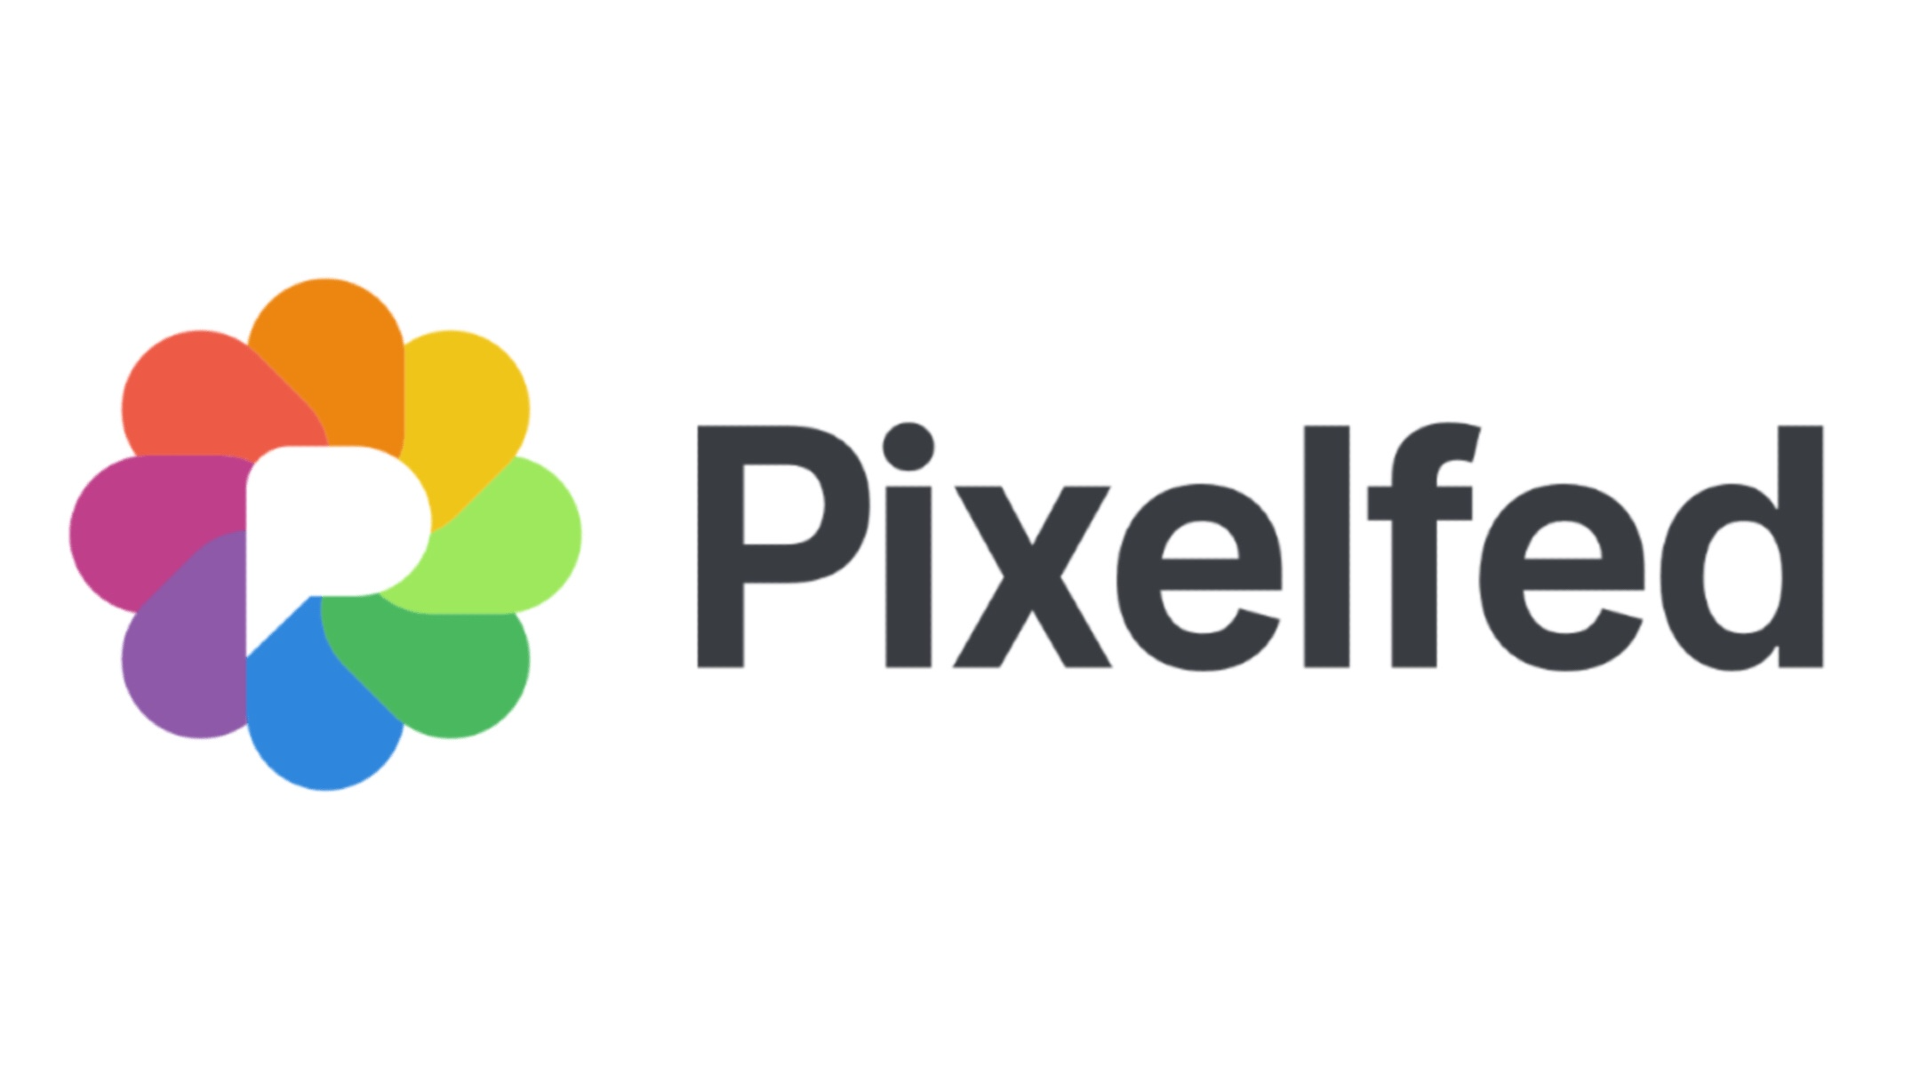 Pixelfed è una piattaforma di condivisione di immagini, un'alternativa etica alle piattaforme centralizzate.